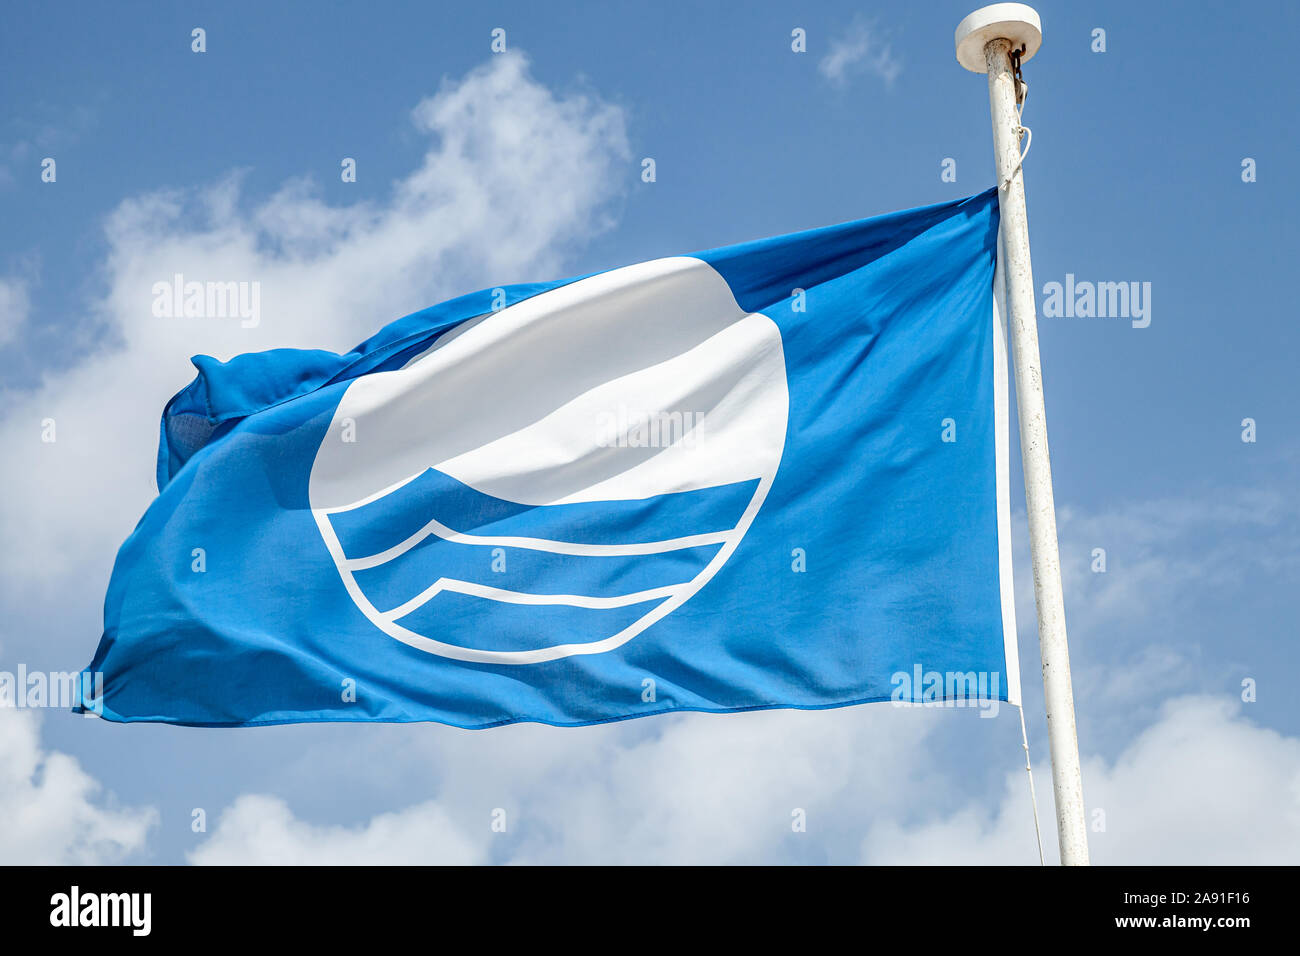 Plage Pavillon bleu. Photo en gros plan d'un cadre de brandir le drapeau blue cloudy sky Banque D'Images